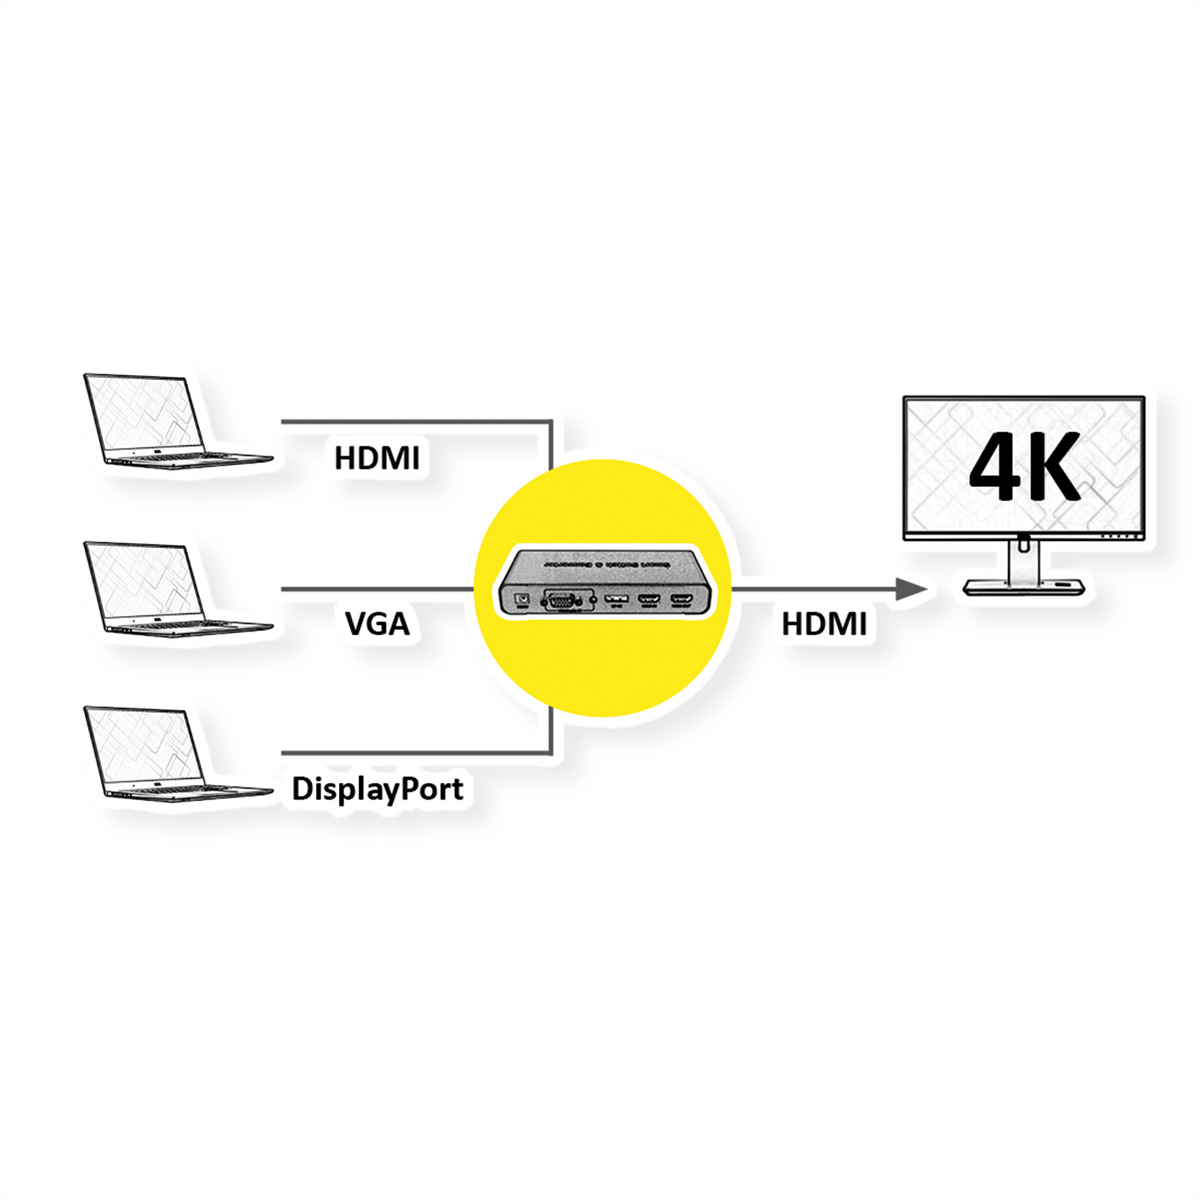 ROLINE HDMI/VGA/DP HDMI zu HDMI-Video-Switch Konverter-Switch